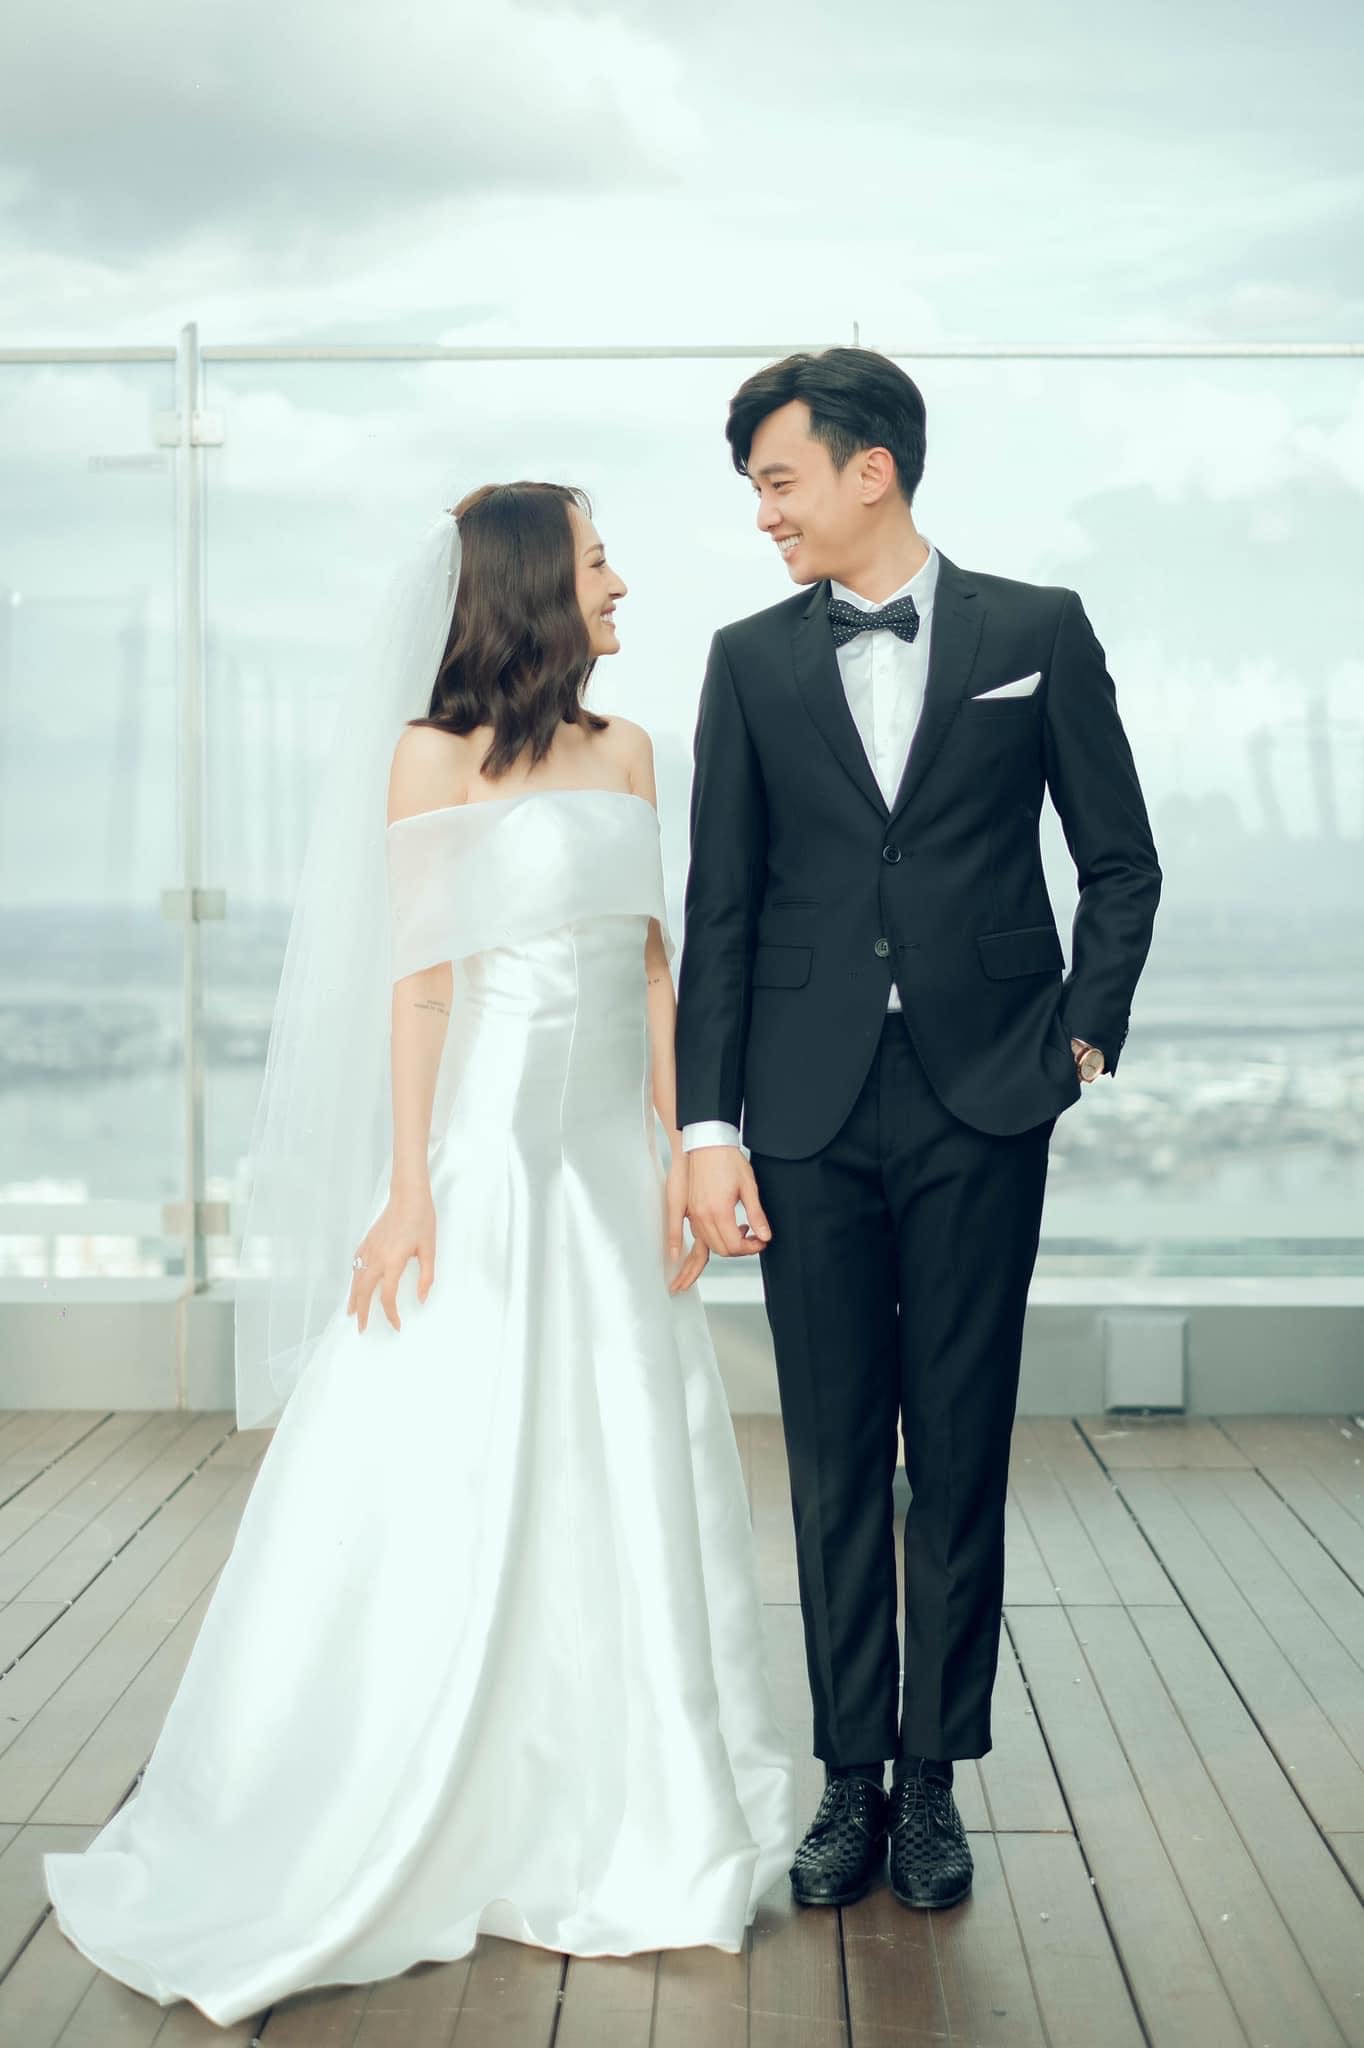 Hình ảnh tươi trẻ, tinh tế và thời trang là lý do tại sao nhiều cặp đôi yêu thích chụp ảnh cưới theo phong cách Hàn Quốc. Bạn có muốn khám phá những bức ảnh tuyệt đẹp này không?